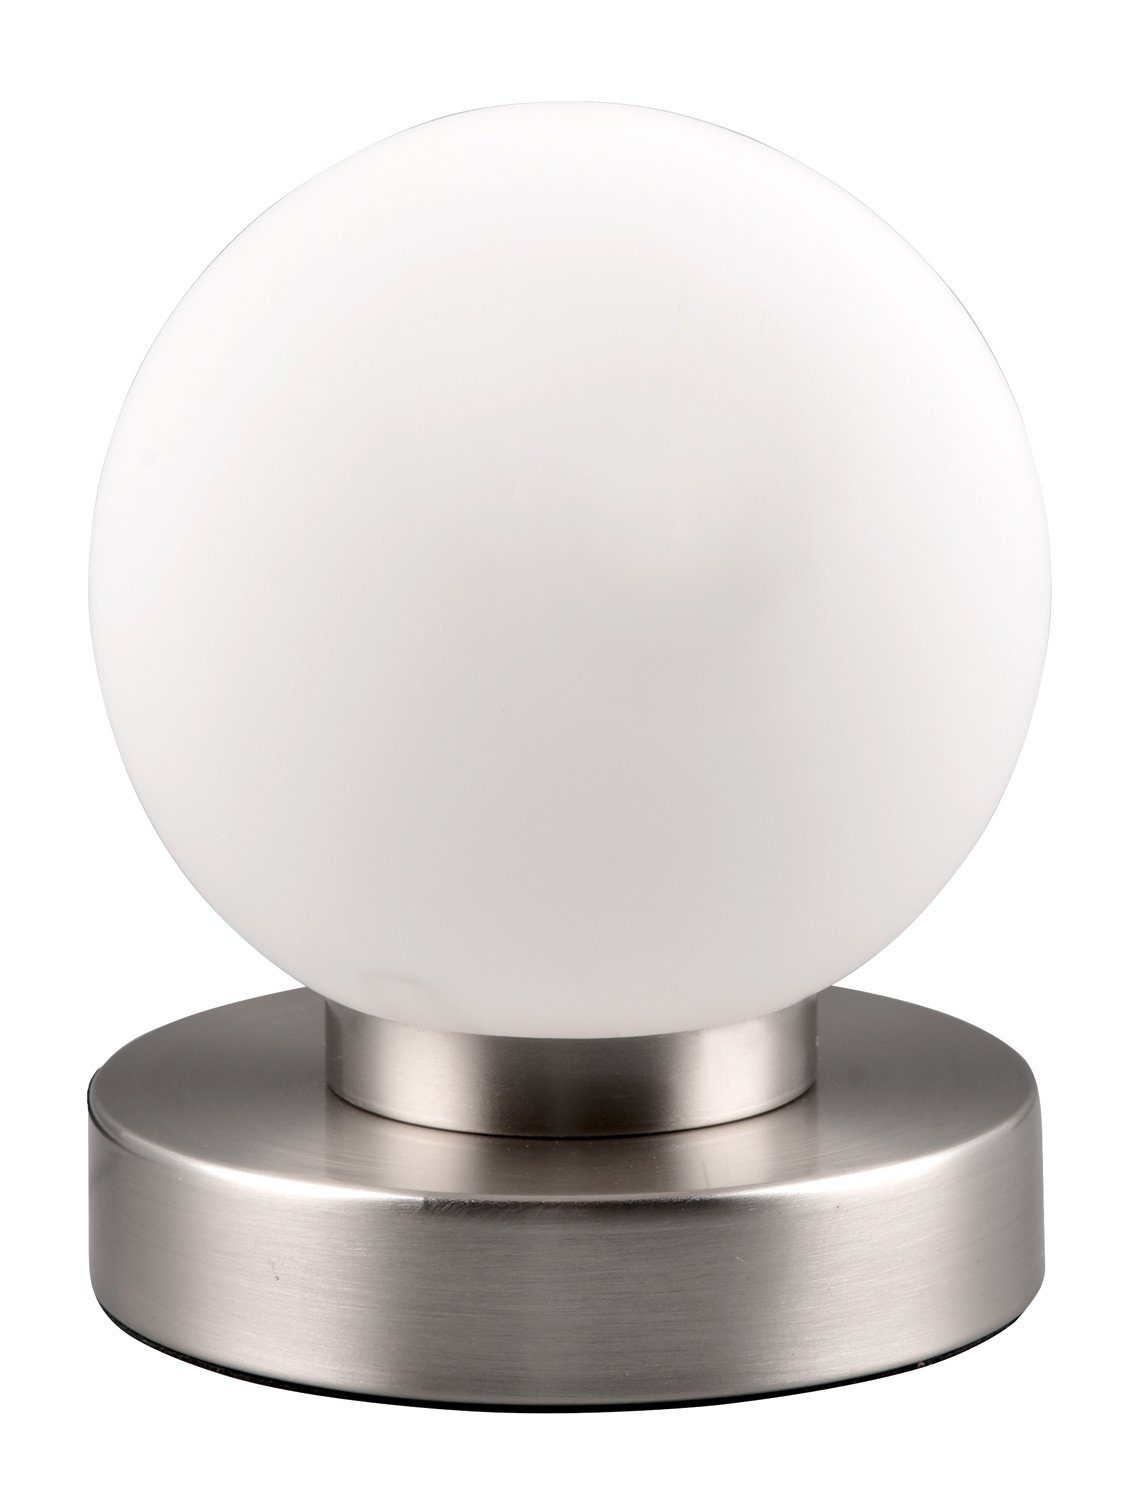 Reality Leuchten Tischleuchte PRESTON, 1-flammig, Weiß, Glasschirm, H 15 cm, ohne Leuchtmittel, Metallgestell Nickelfarben matt, Tischlampe, Touchfunktion